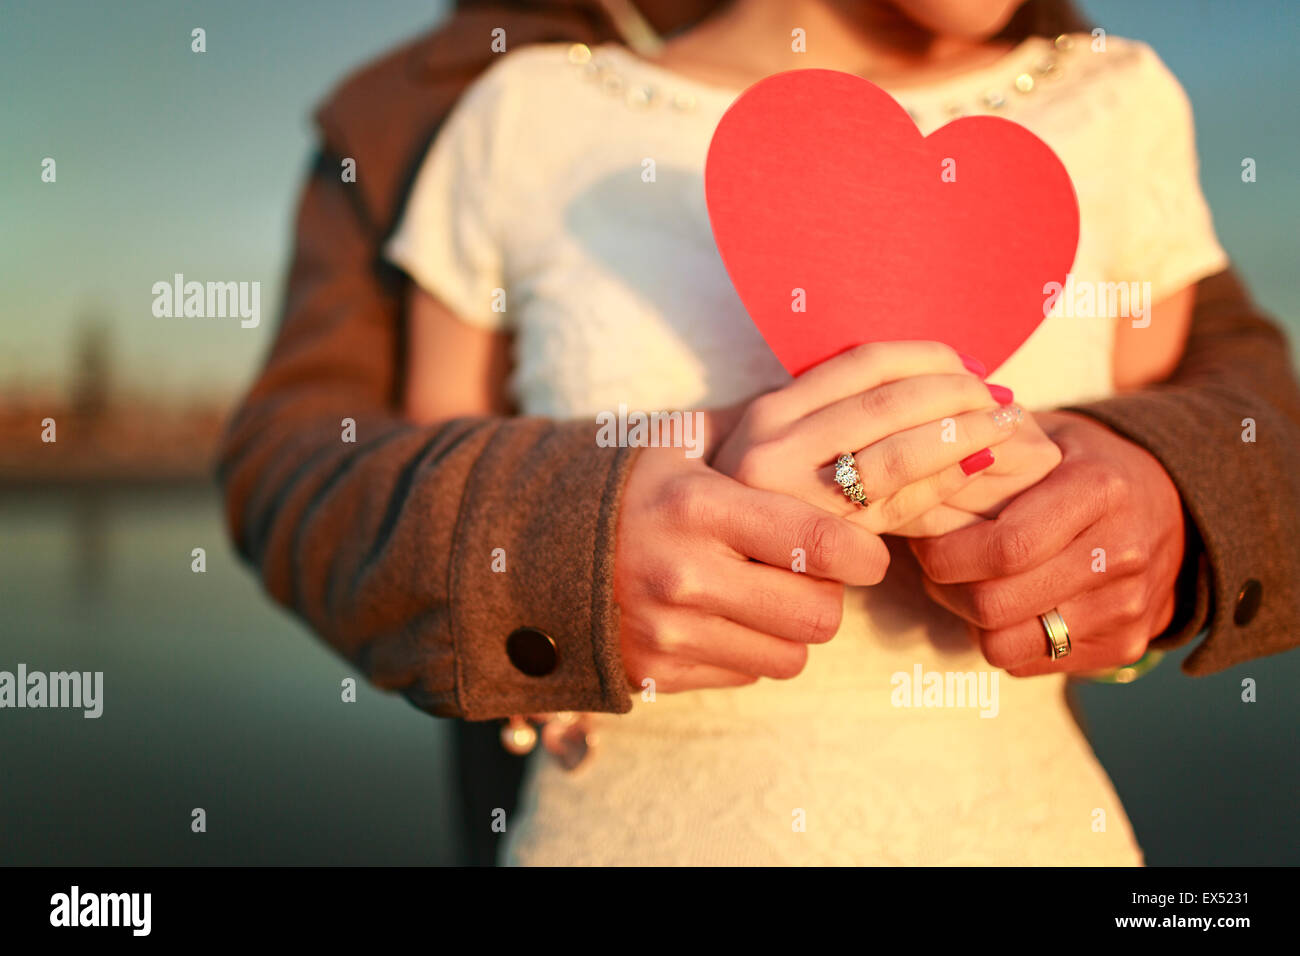 Romantic Love Stock Photo